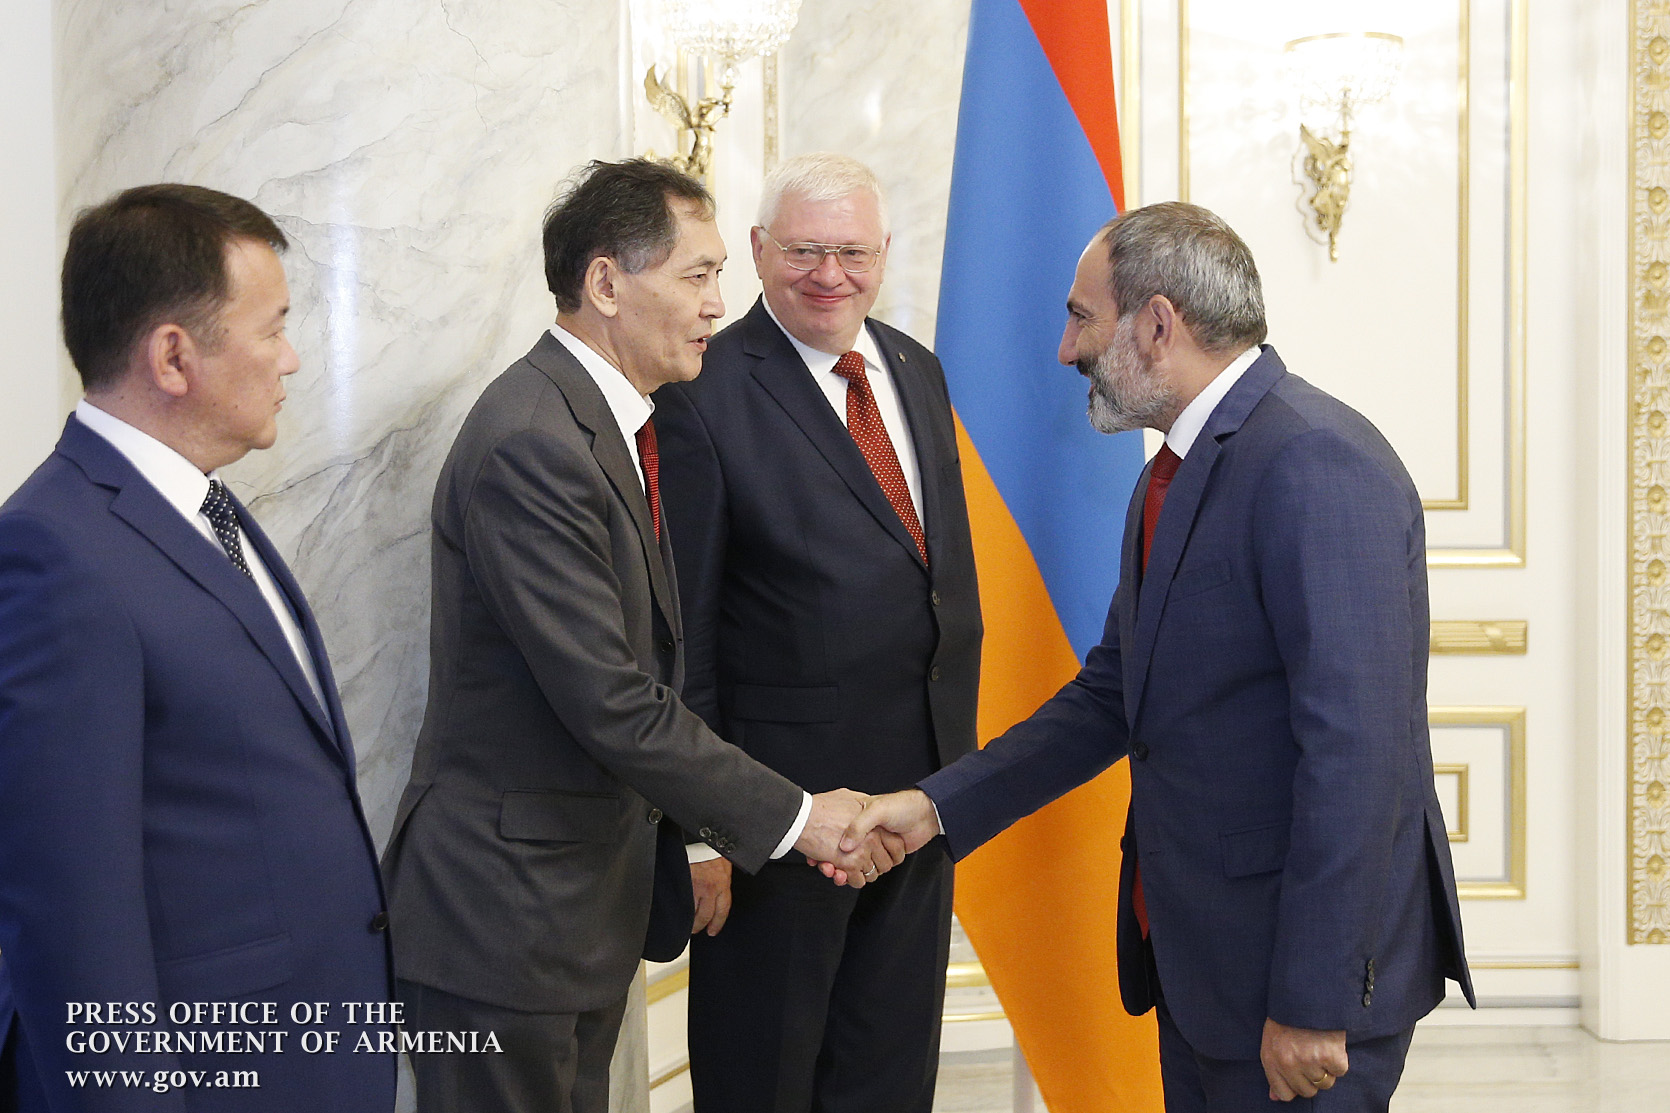 Правительство Армении ведет решительную борьбу с коррупцией  - Пашинян